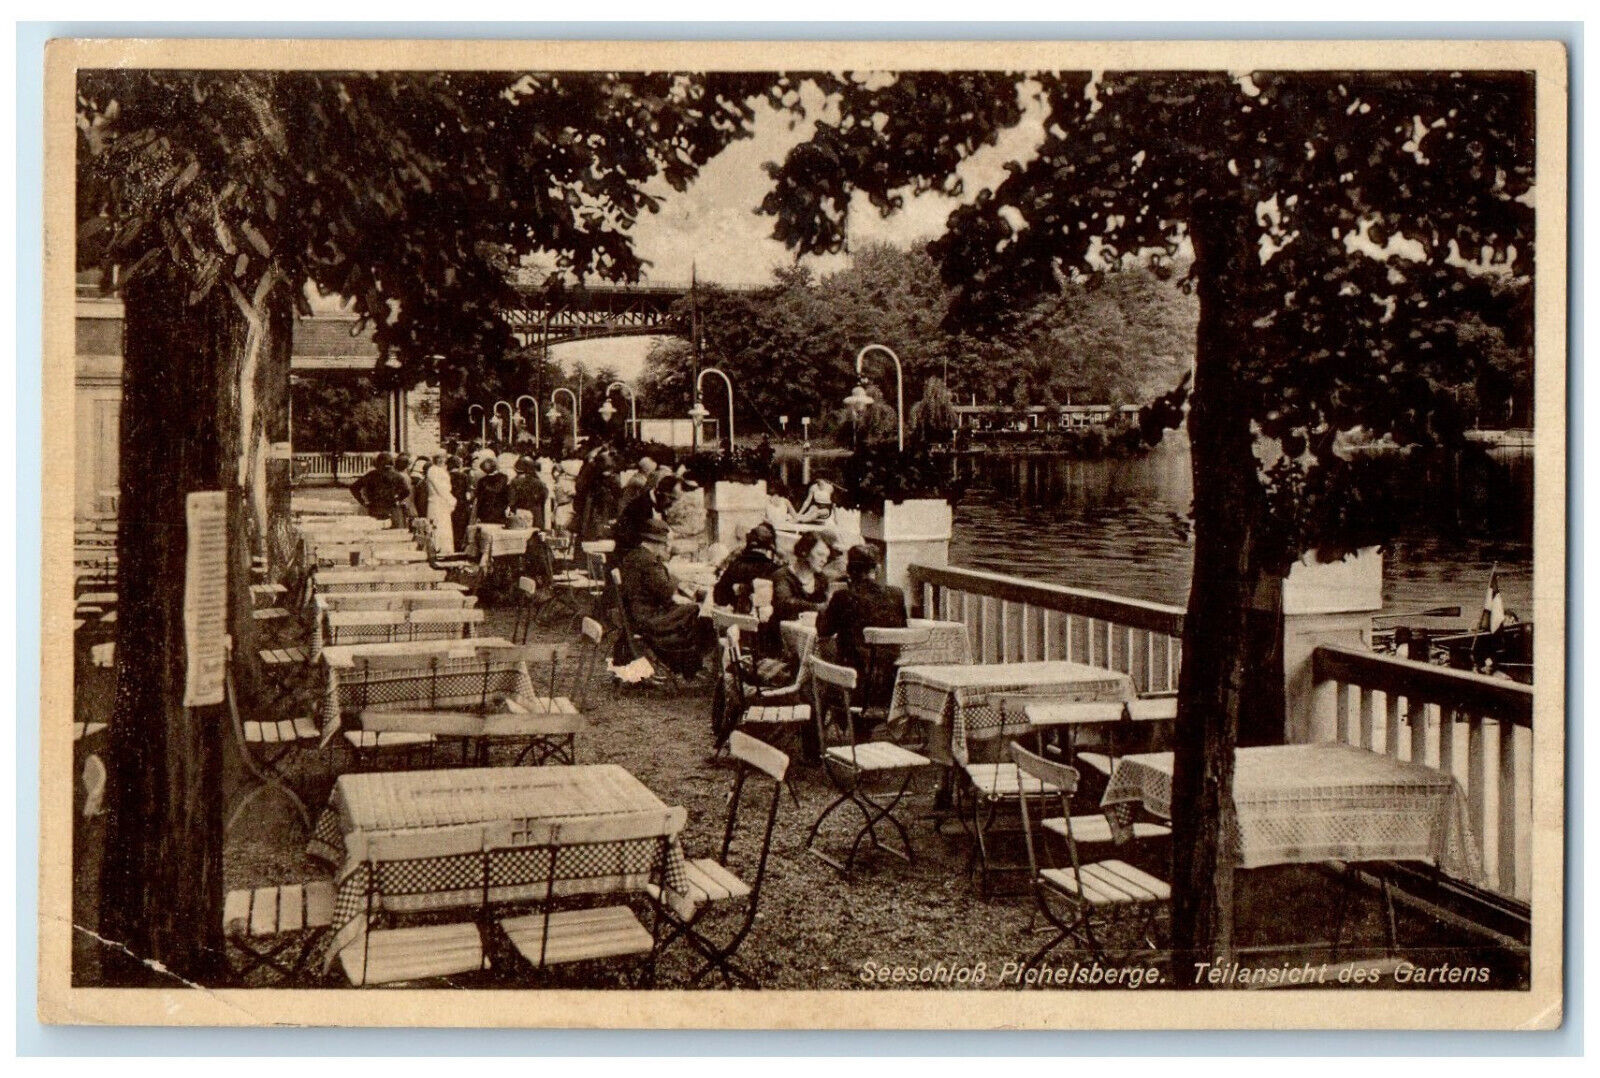 1939 Partial View Of The Garden Seeschloss Pichelsberge Berlin Germany Postcard